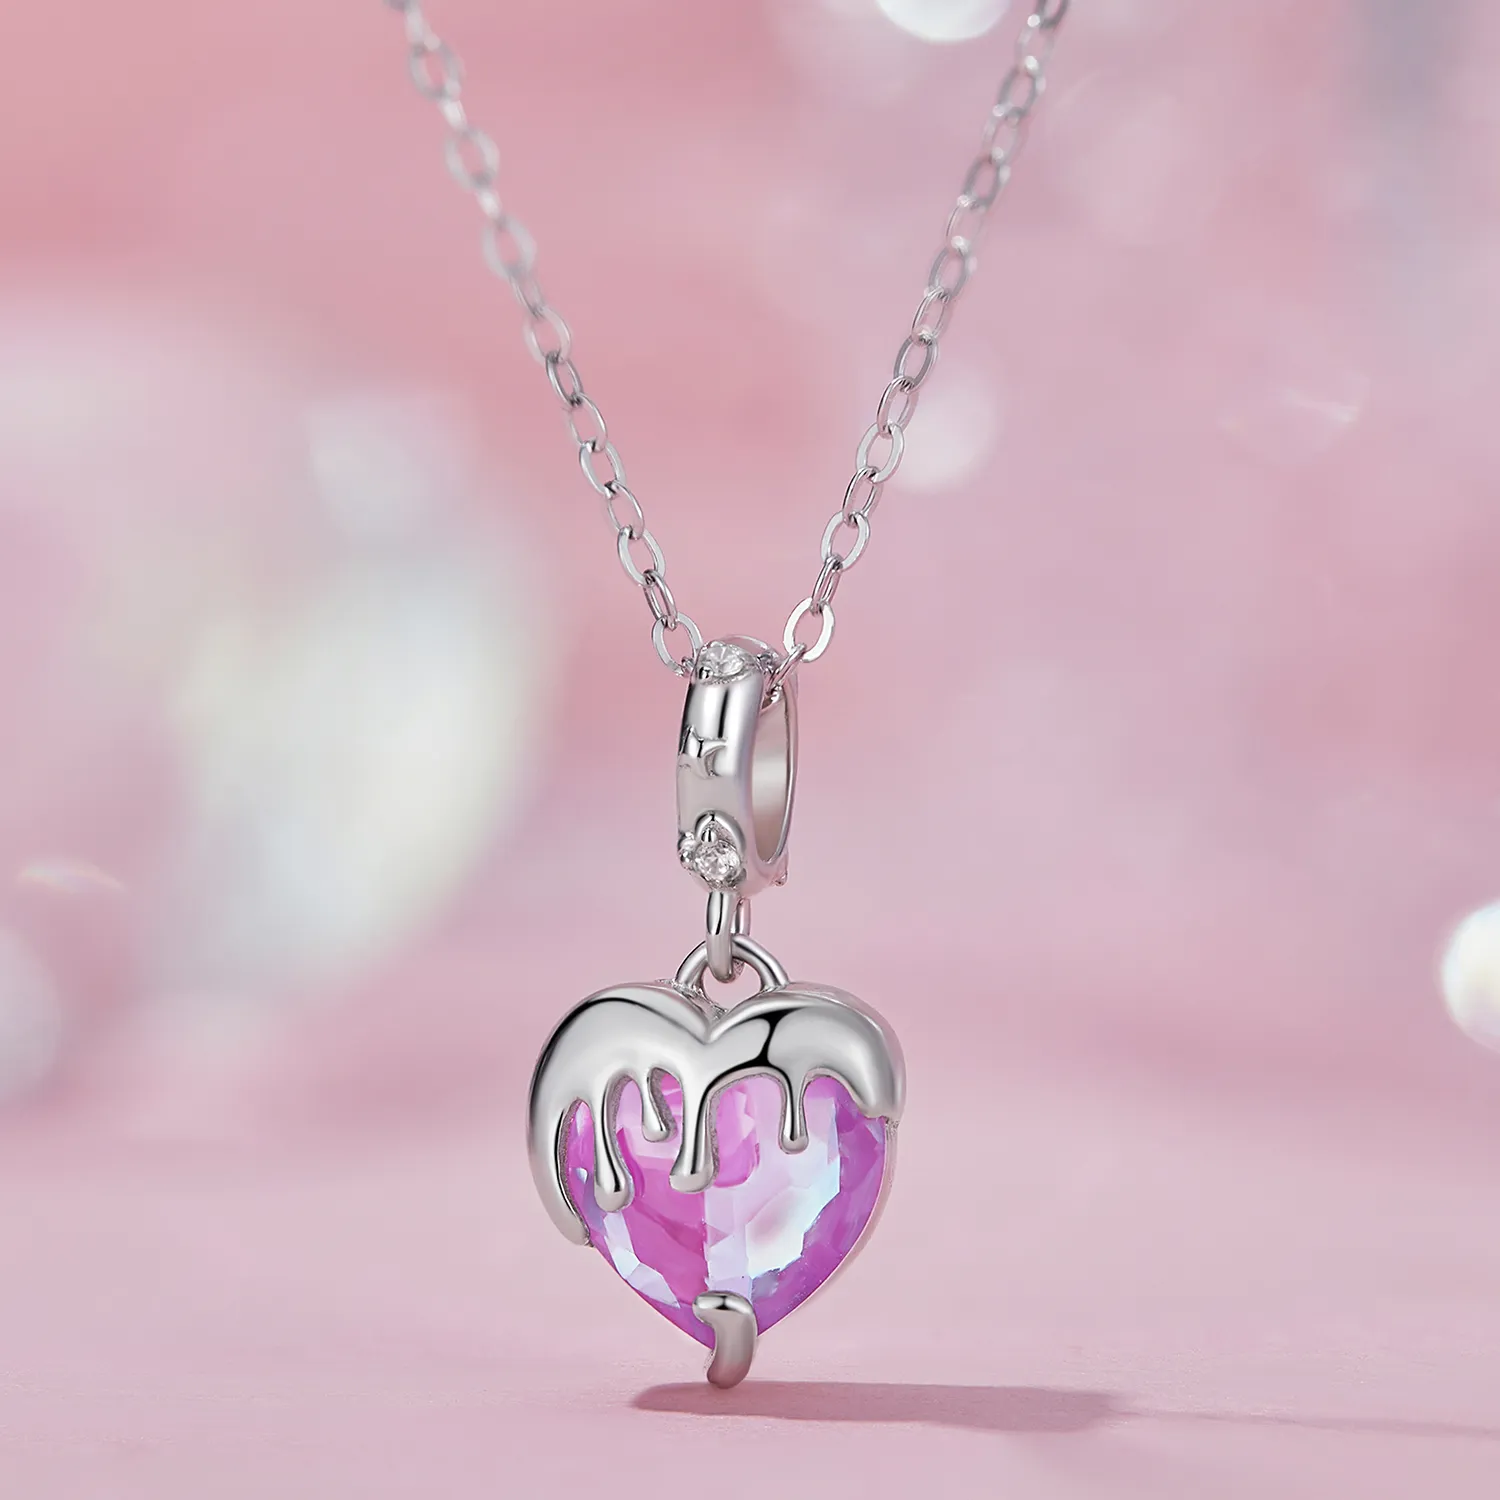 Pandantiv stil Pandora în formă de inimă topită pentru fetițe - SCC2471